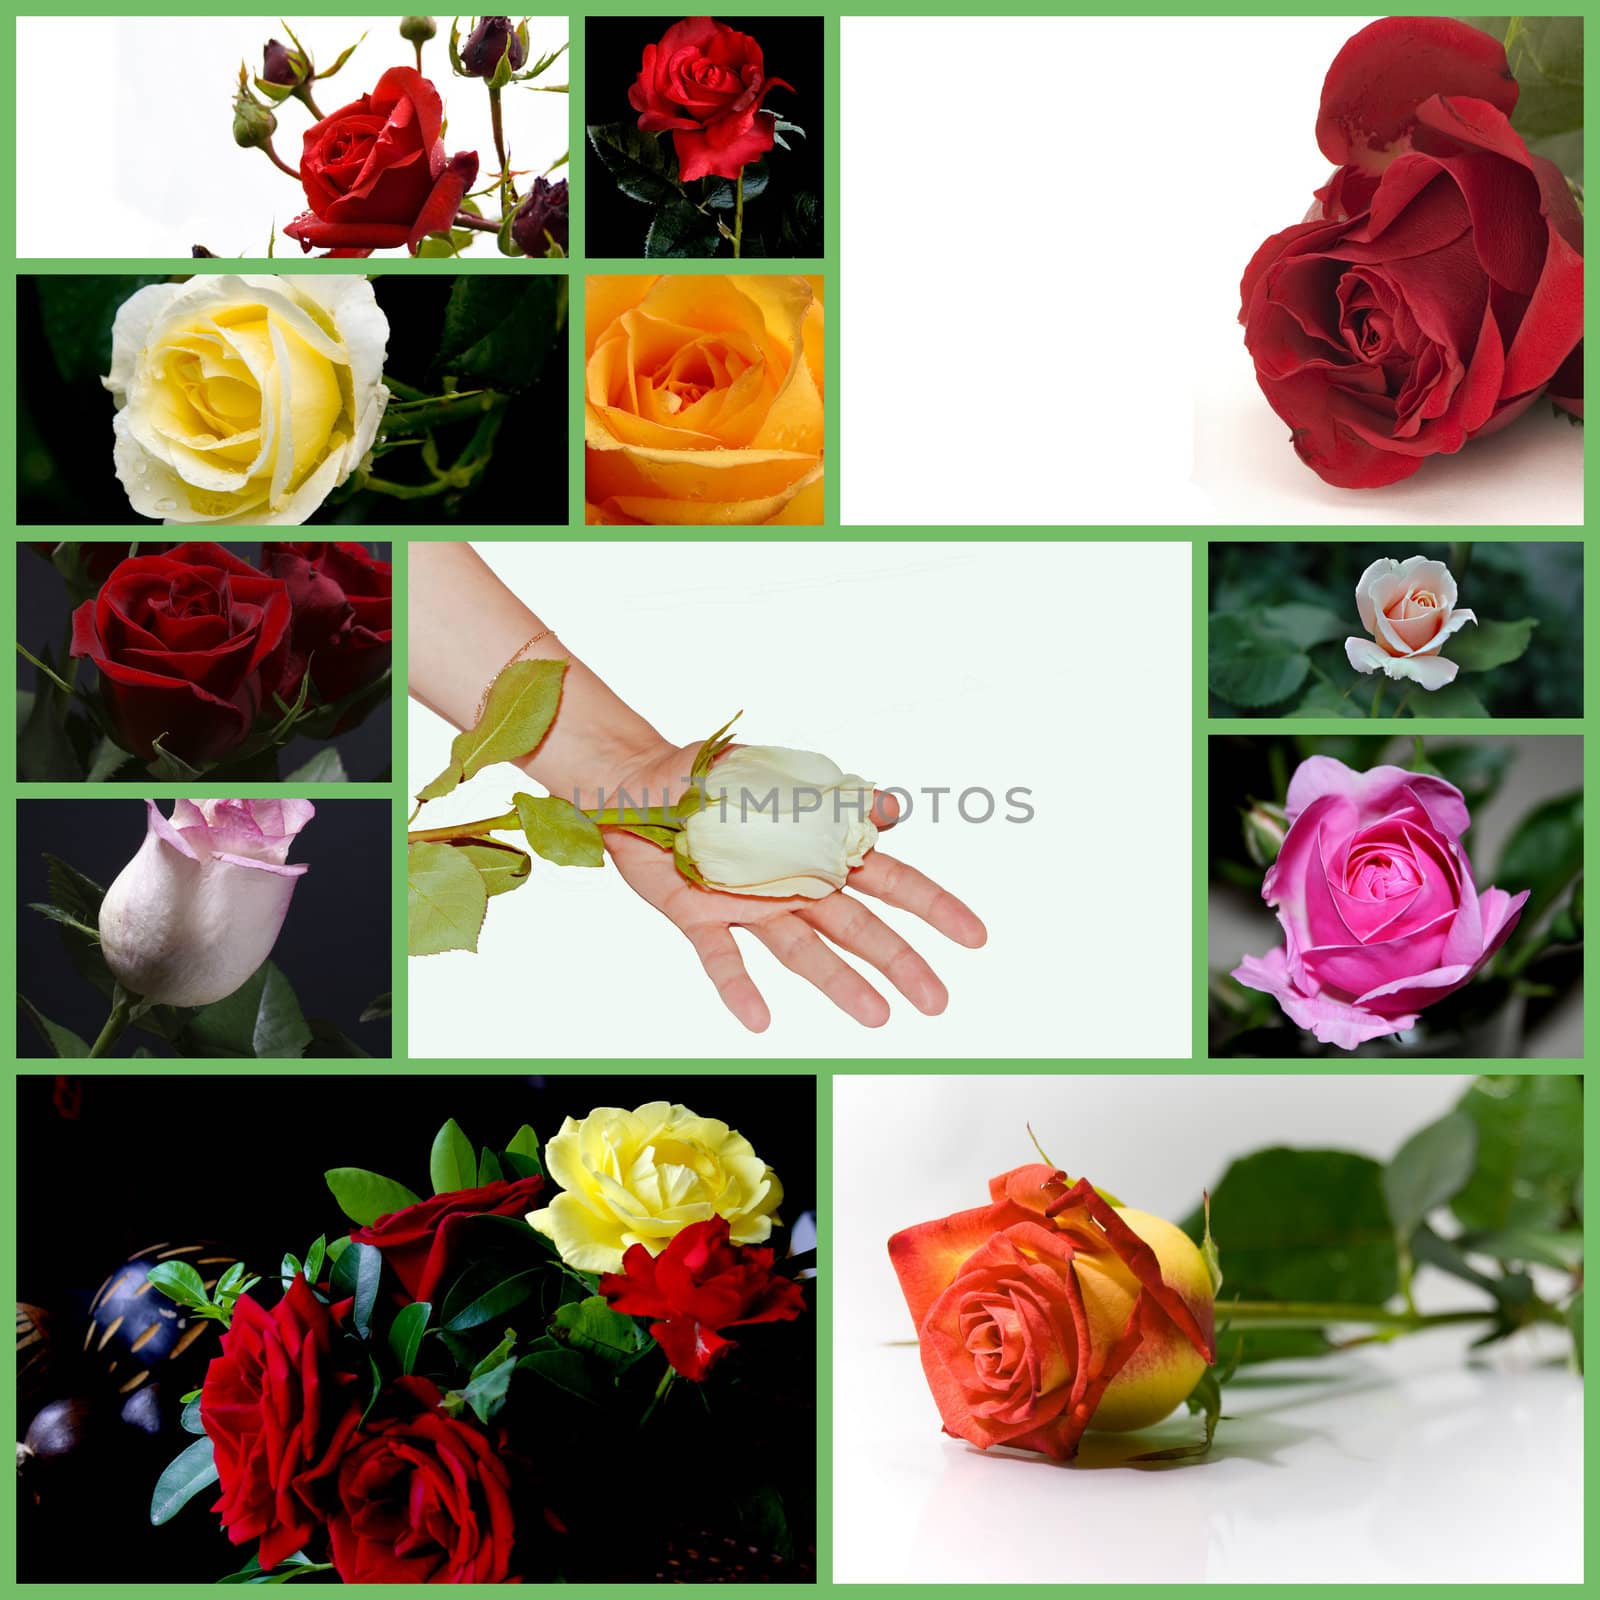 Rose by Baltus